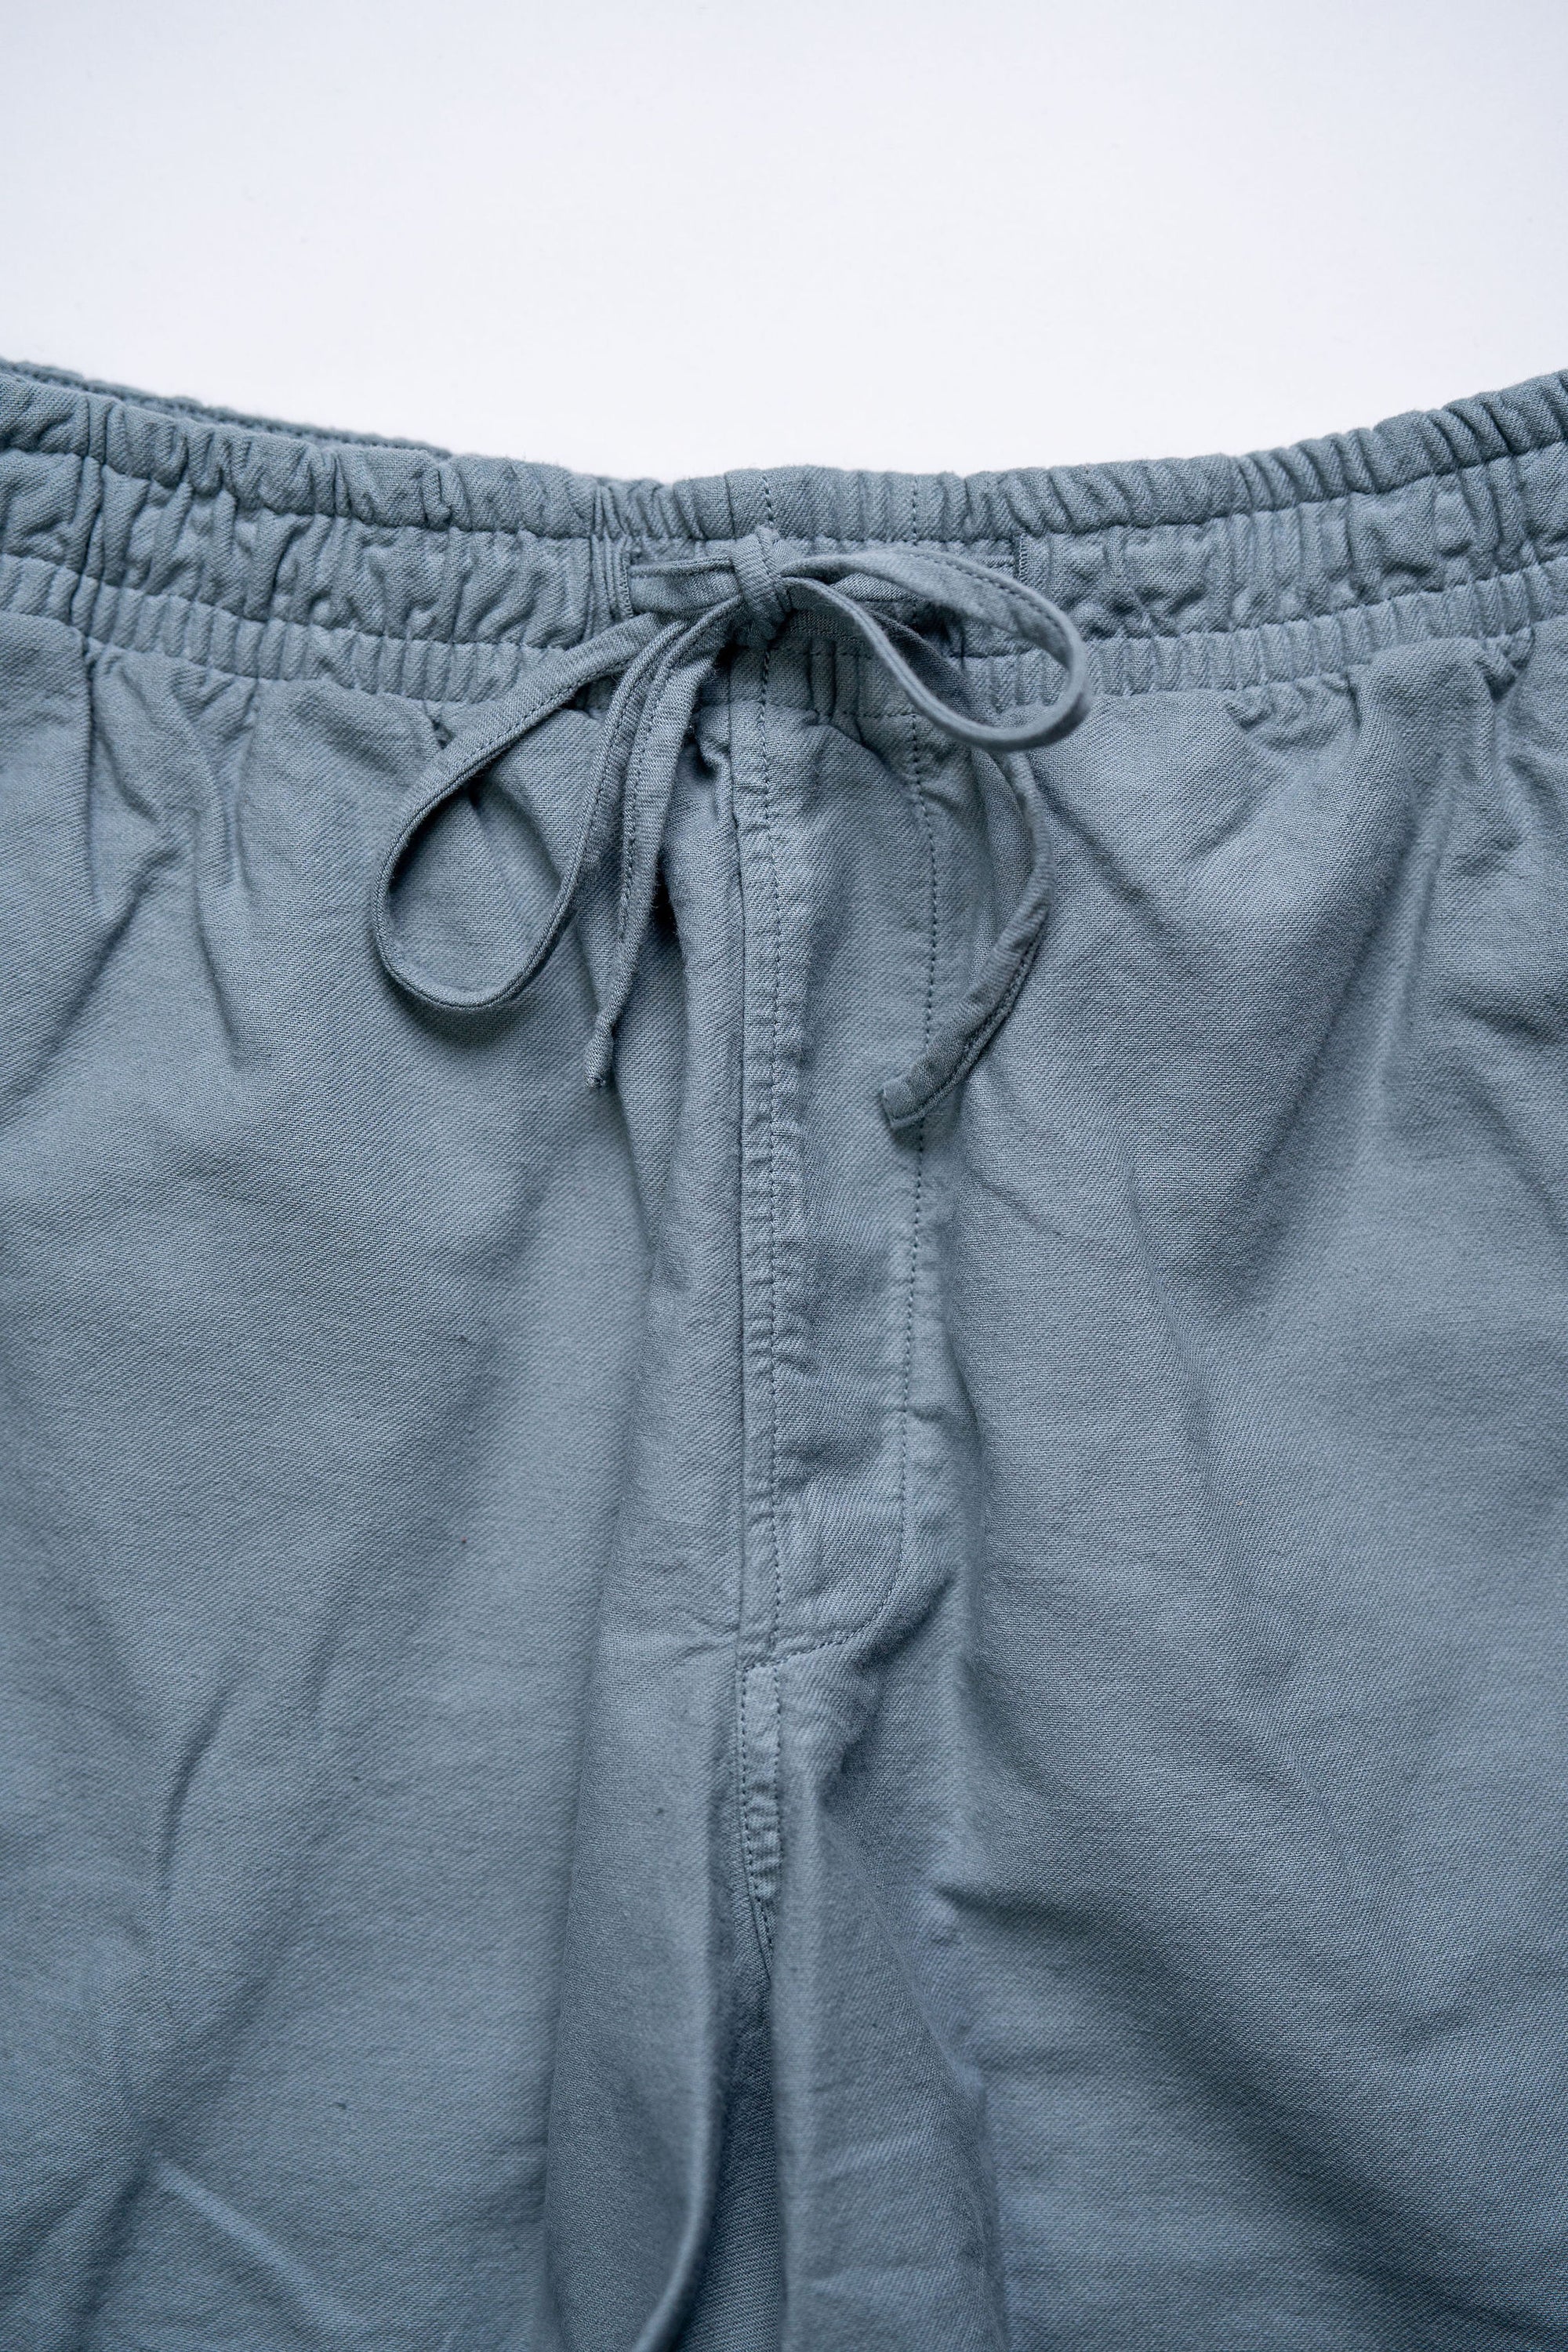 Hansen Garments Janik Casual Drawstring Shorts - Lagoon